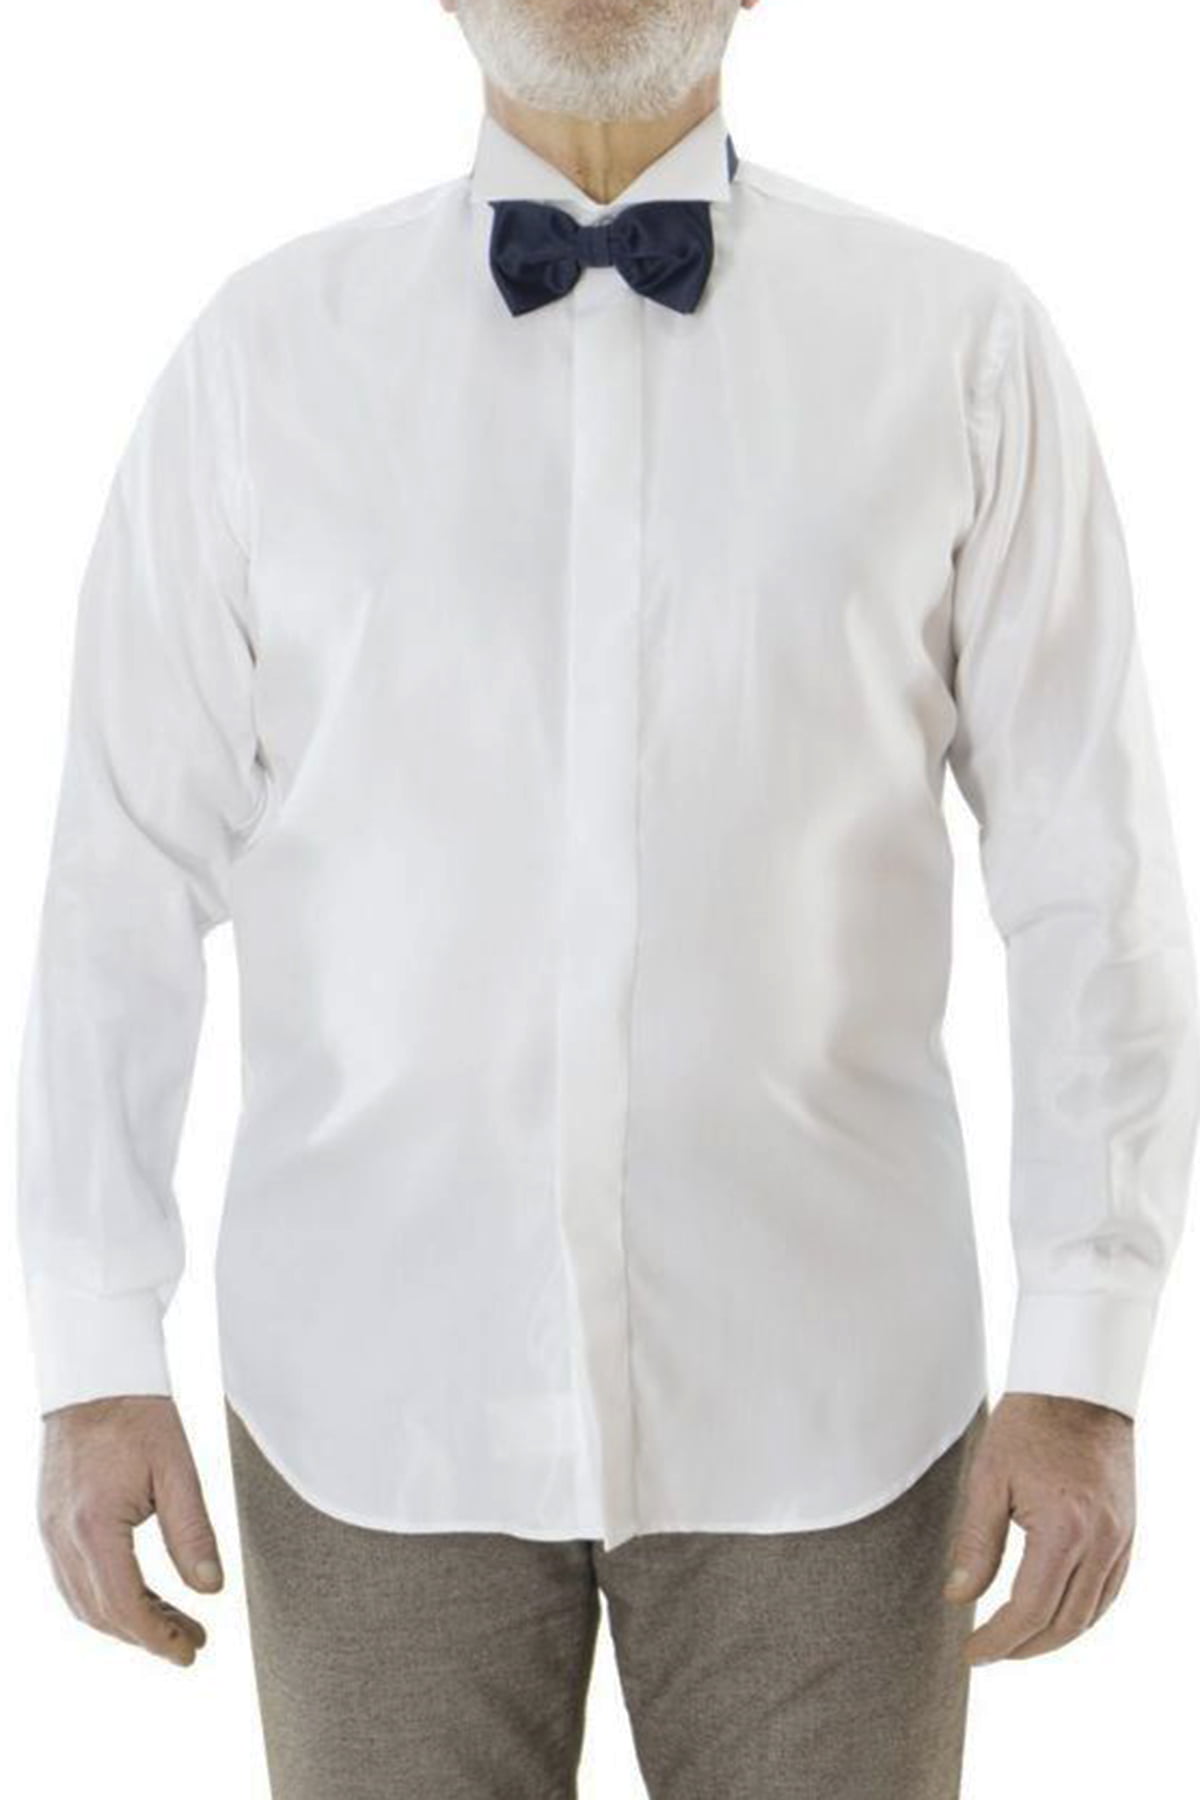 Camicia uomo regular collo diplomatico da cerimonia polsi gemelli